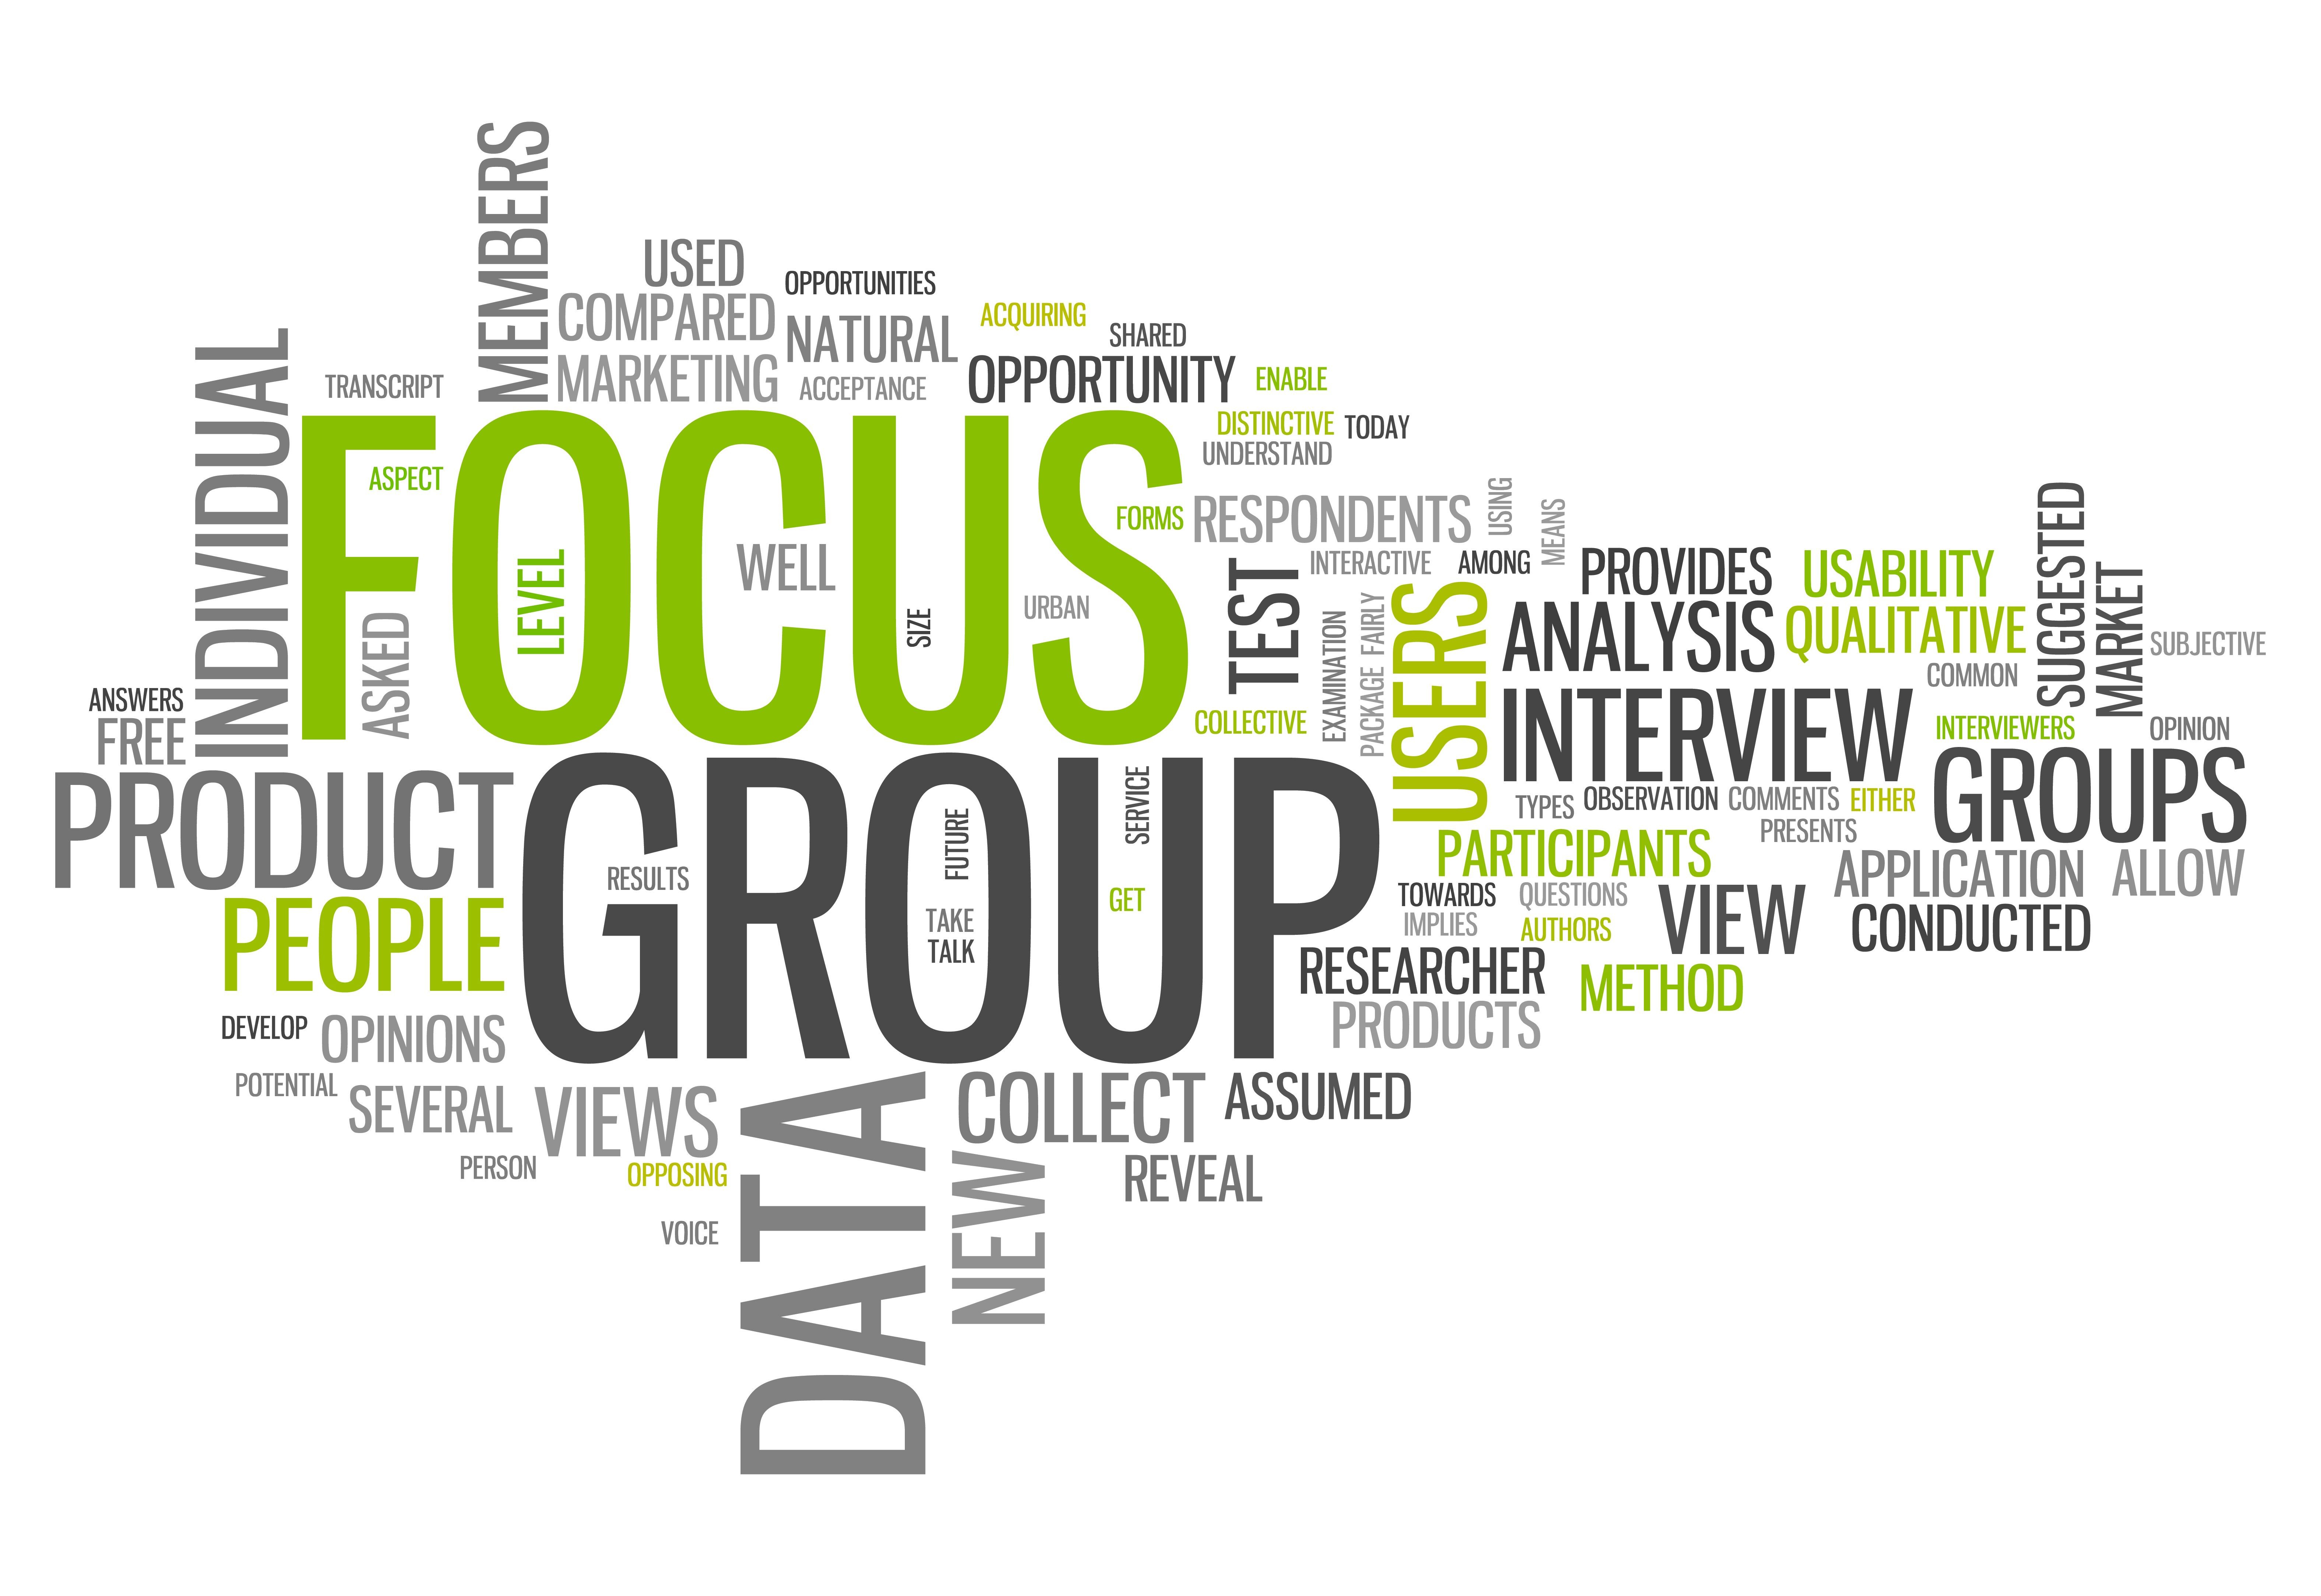 Product opinion. Фокус группа. Коллектив облако слов. Focus Groups.